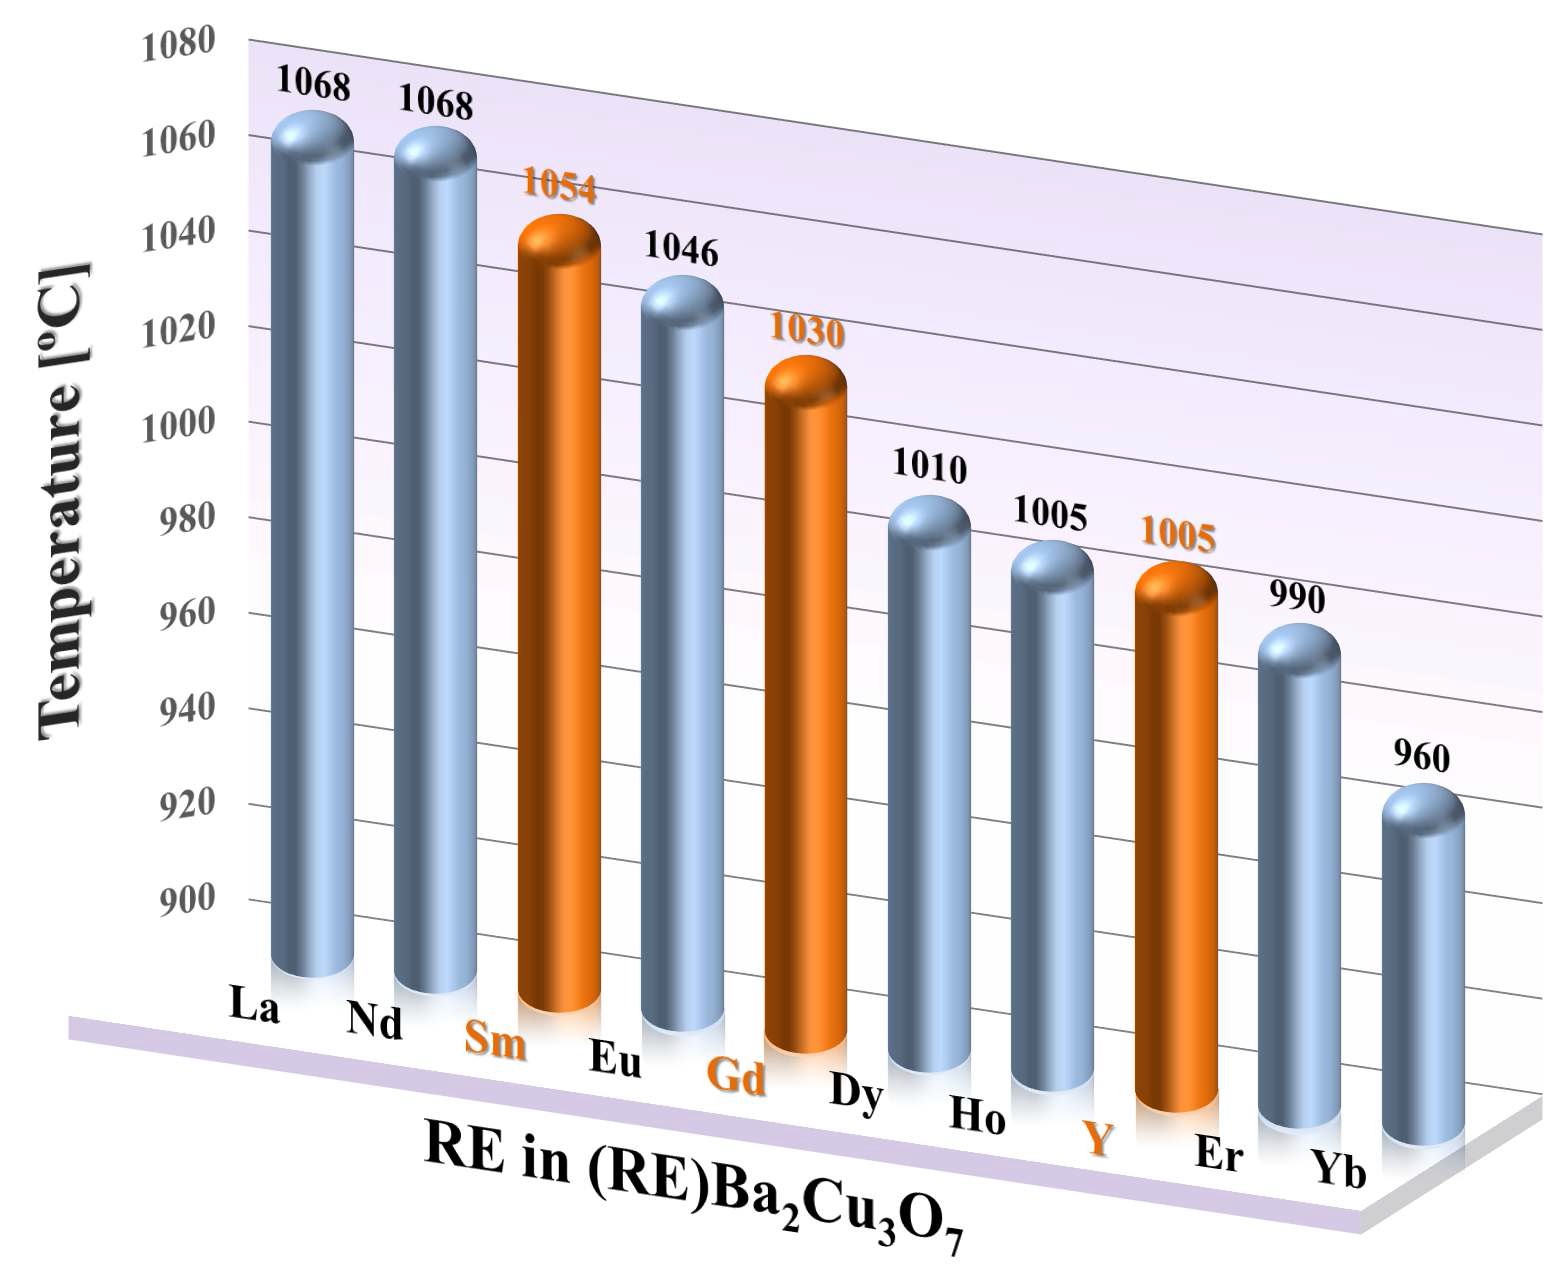 희토류 원소 종류에 따른 ReBa2Cu3O7 bulk 초전도체의 1기압에서의 용융 온도 그래프